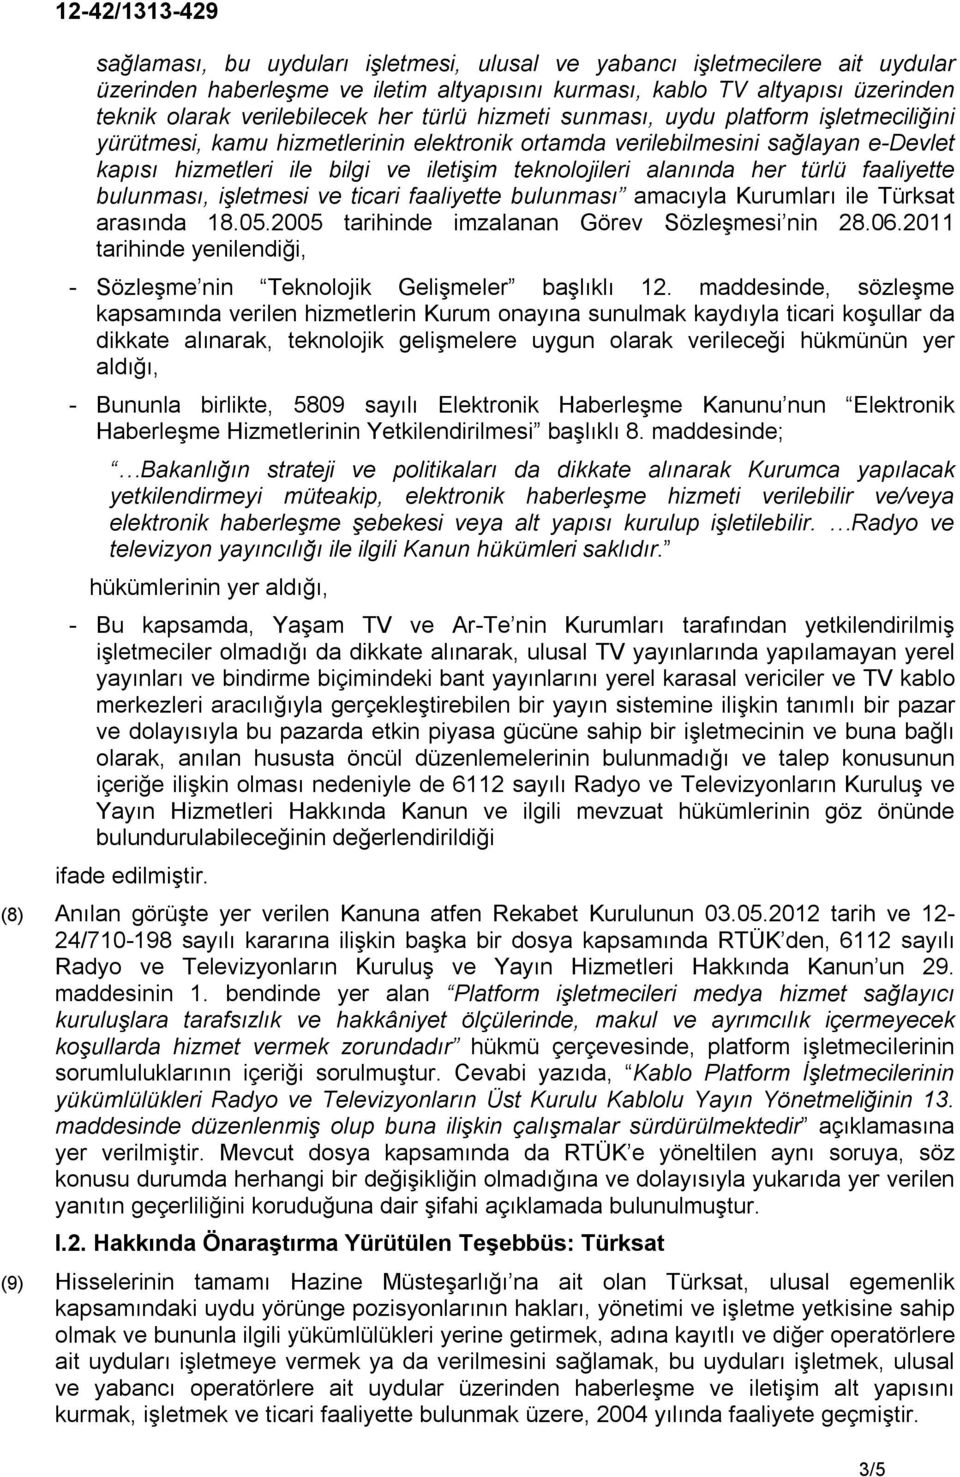 türlü faaliyette bulunması, işletmesi ve ticari faaliyette bulunması amacıyla Kurumları ile Türksat arasında 18.05.2005 tarihinde imzalanan Görev Sözleşmesi nin 28.06.